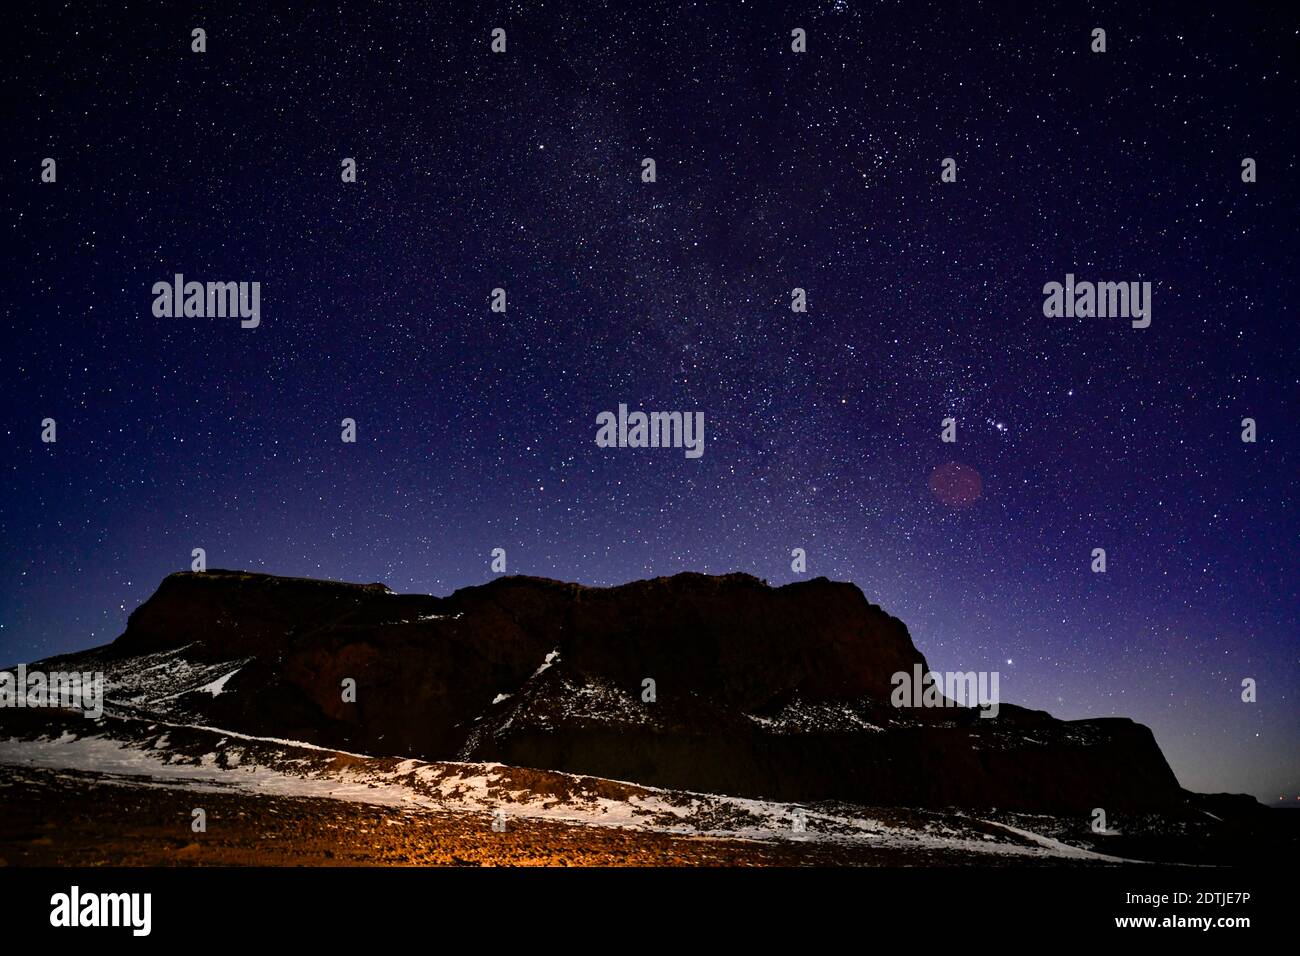 Vista notturna del gruppo del vulcano Ulan Hada a Chahar Right Back Banner, città di Ulanchabu, regione autonoma della Mongolia interna della Cina del nord, 20 dicembre 2020. Foto Stock